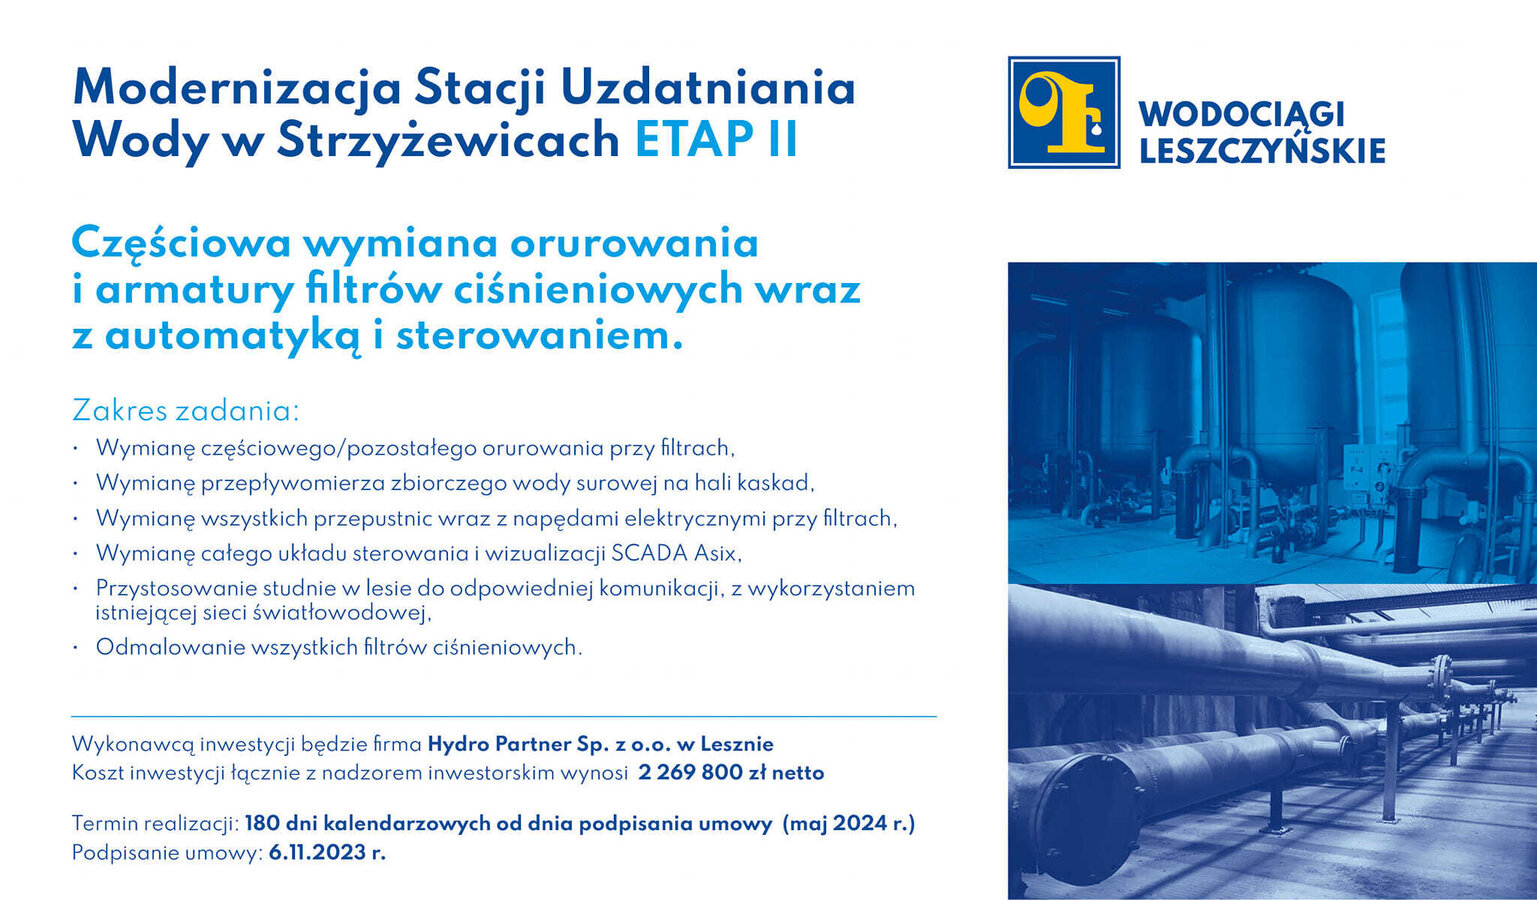 Modernizacja Stacji Uzdatniania Wody w Strzyżewicach - częściowa wymiana orurowania i armatury filtrów ciśnieniowych wraz z automatyką i sterowaniem - Etap II